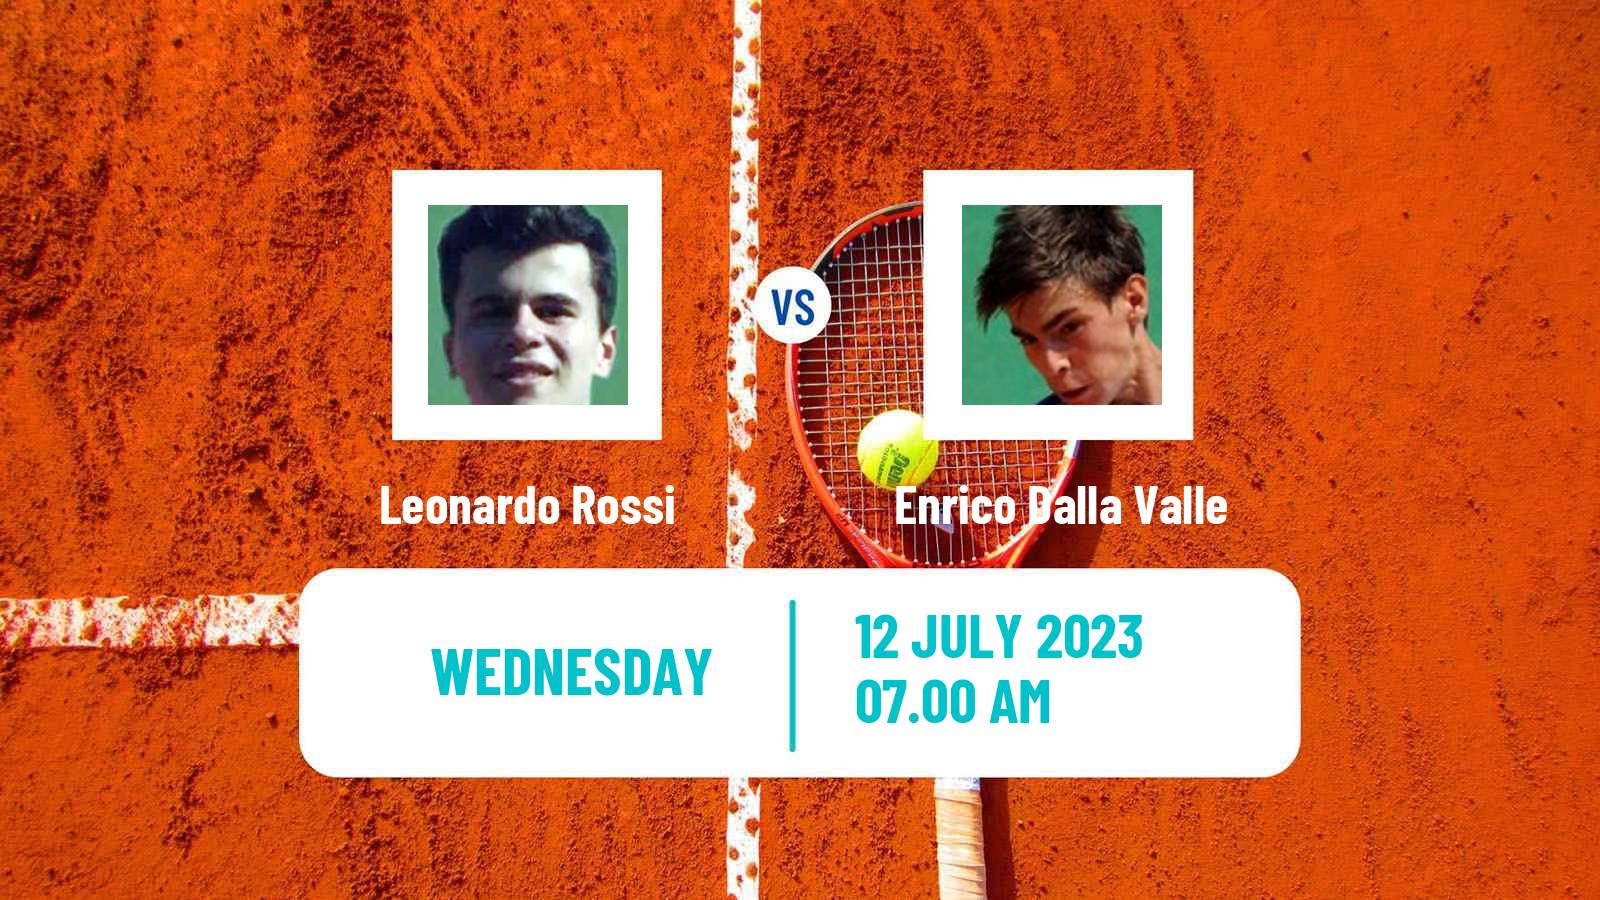 Tennis ITF M25 Padova Men Leonardo Rossi - Enrico Dalla Valle